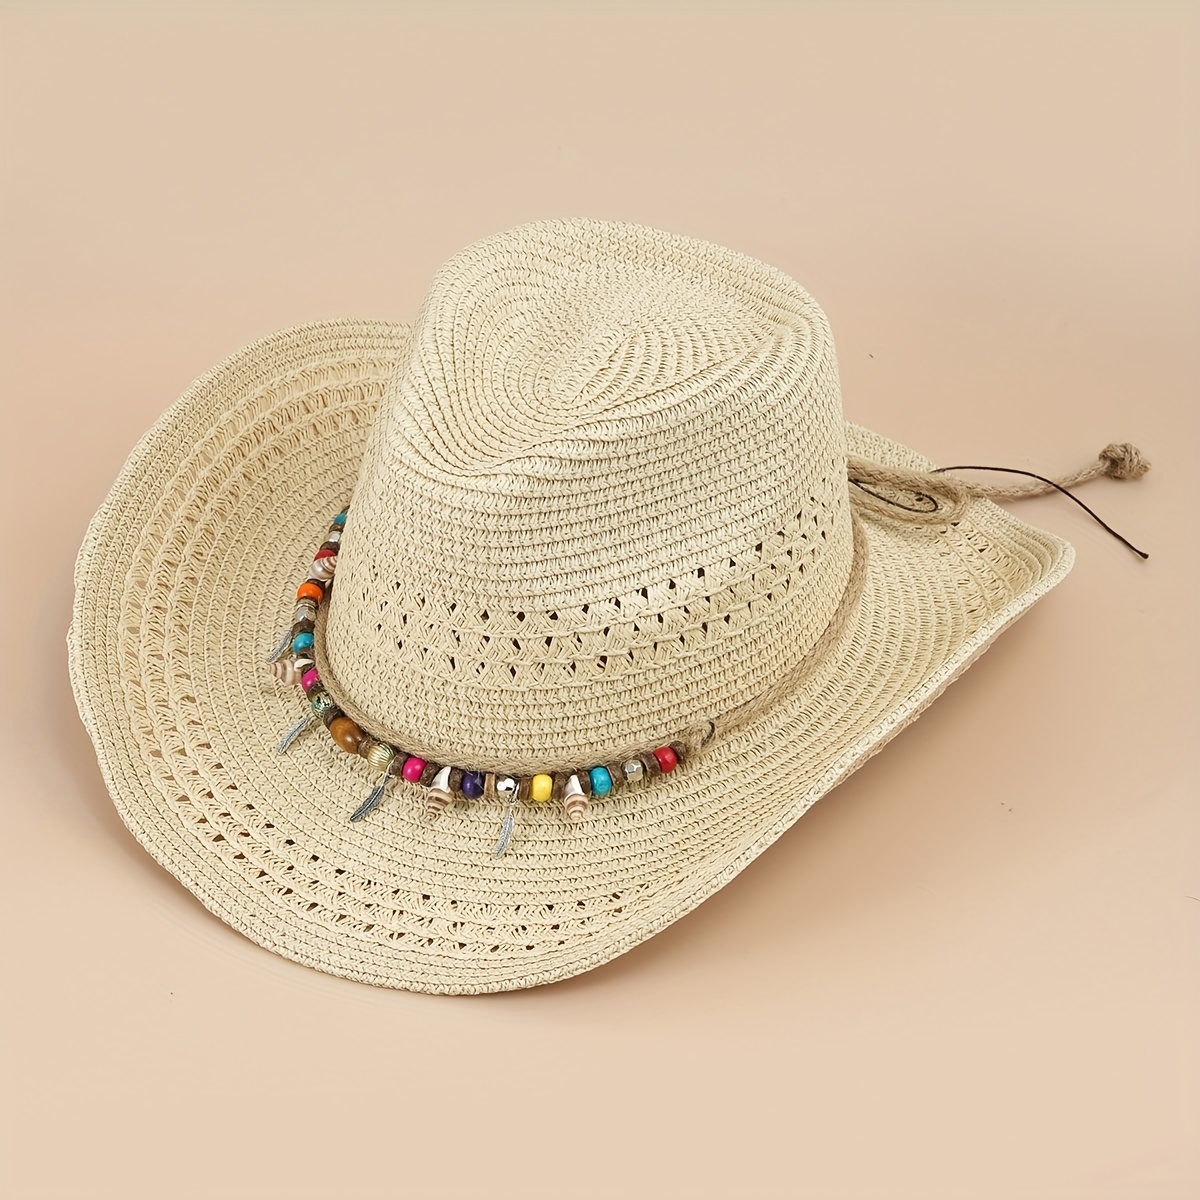 Caqui Western Cowboy Cowgirl Hat Boho Protector Solar - Temu